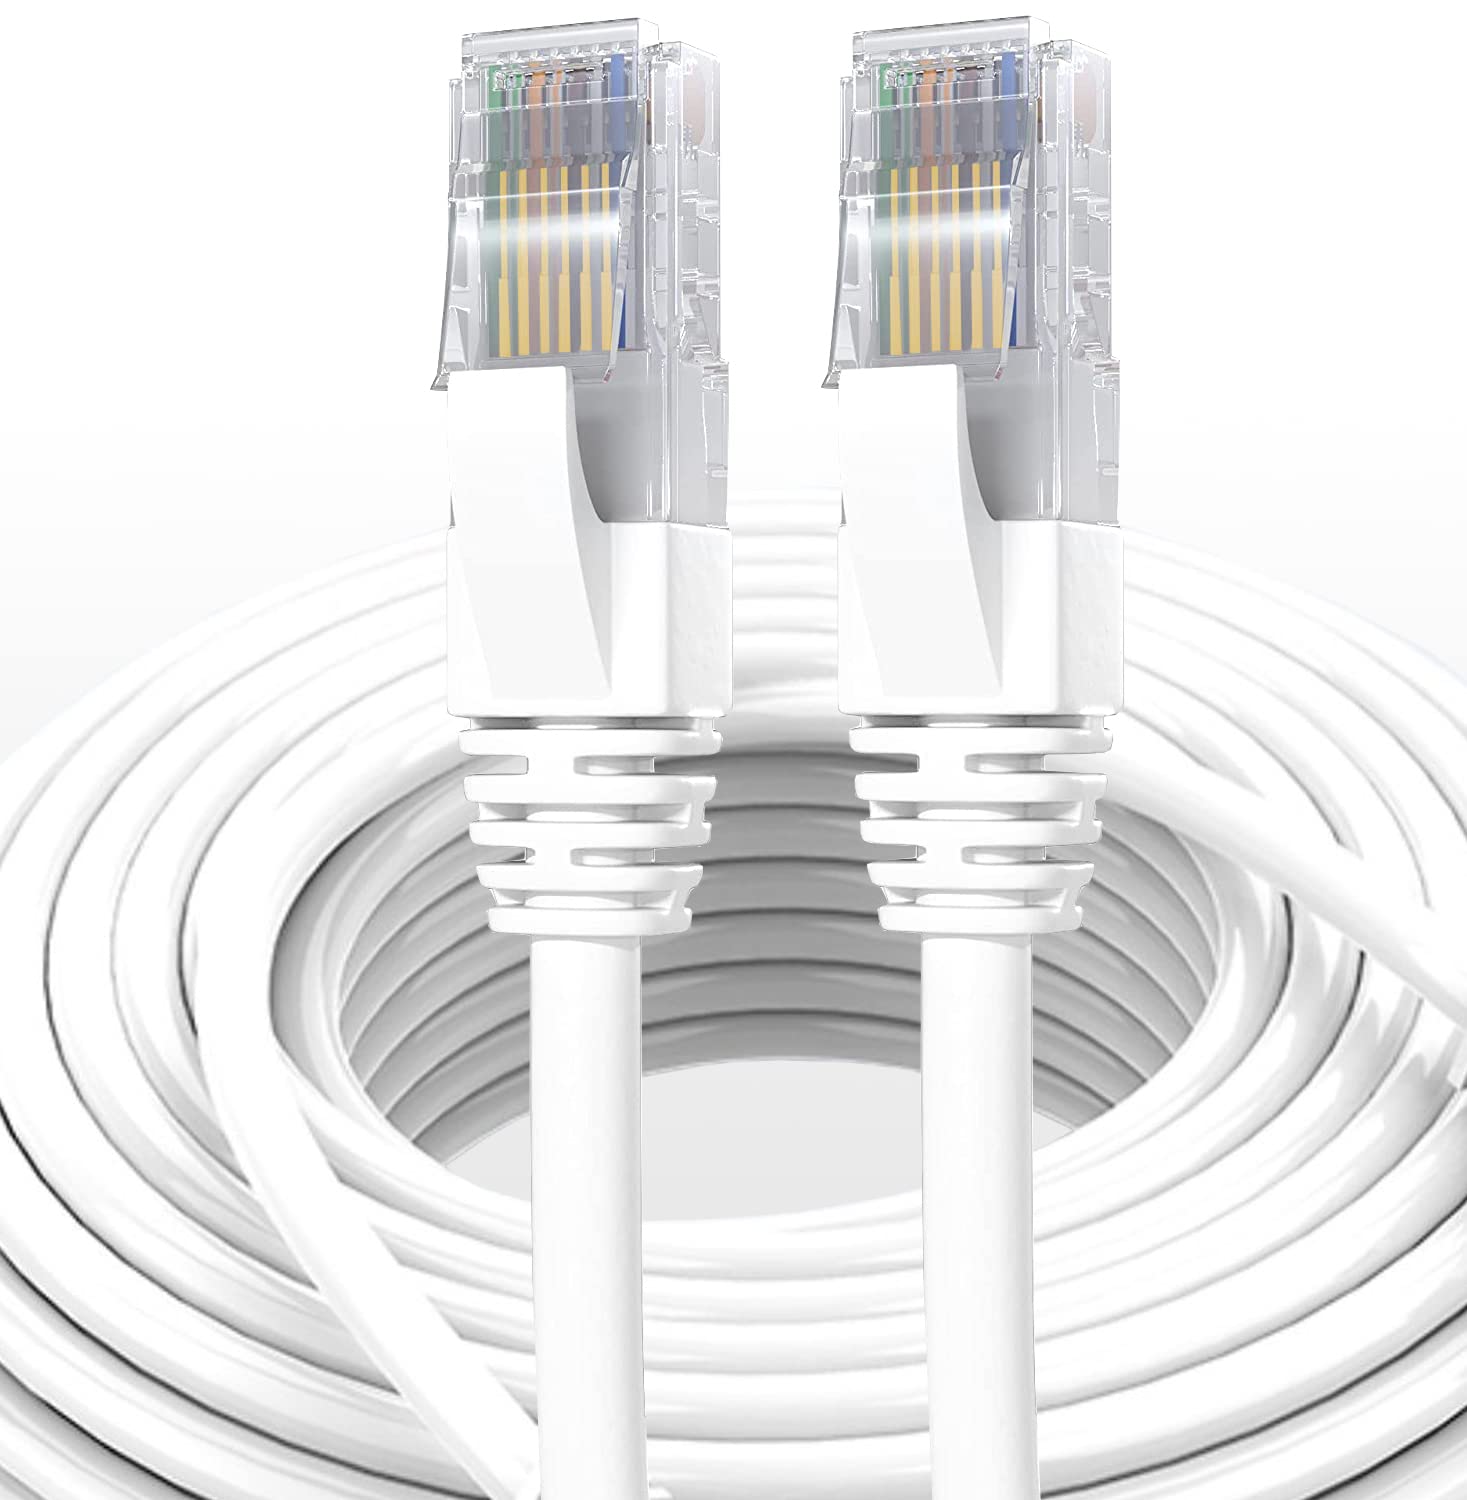 Elfcam® - 30m Cable Reseau Ethernet RJ45 Cat 7, Paire Torsadee Blindee SFTP  100% Cuivre, 6mm Diametre de Cable, 28 AWG Cable Rond  (30M)